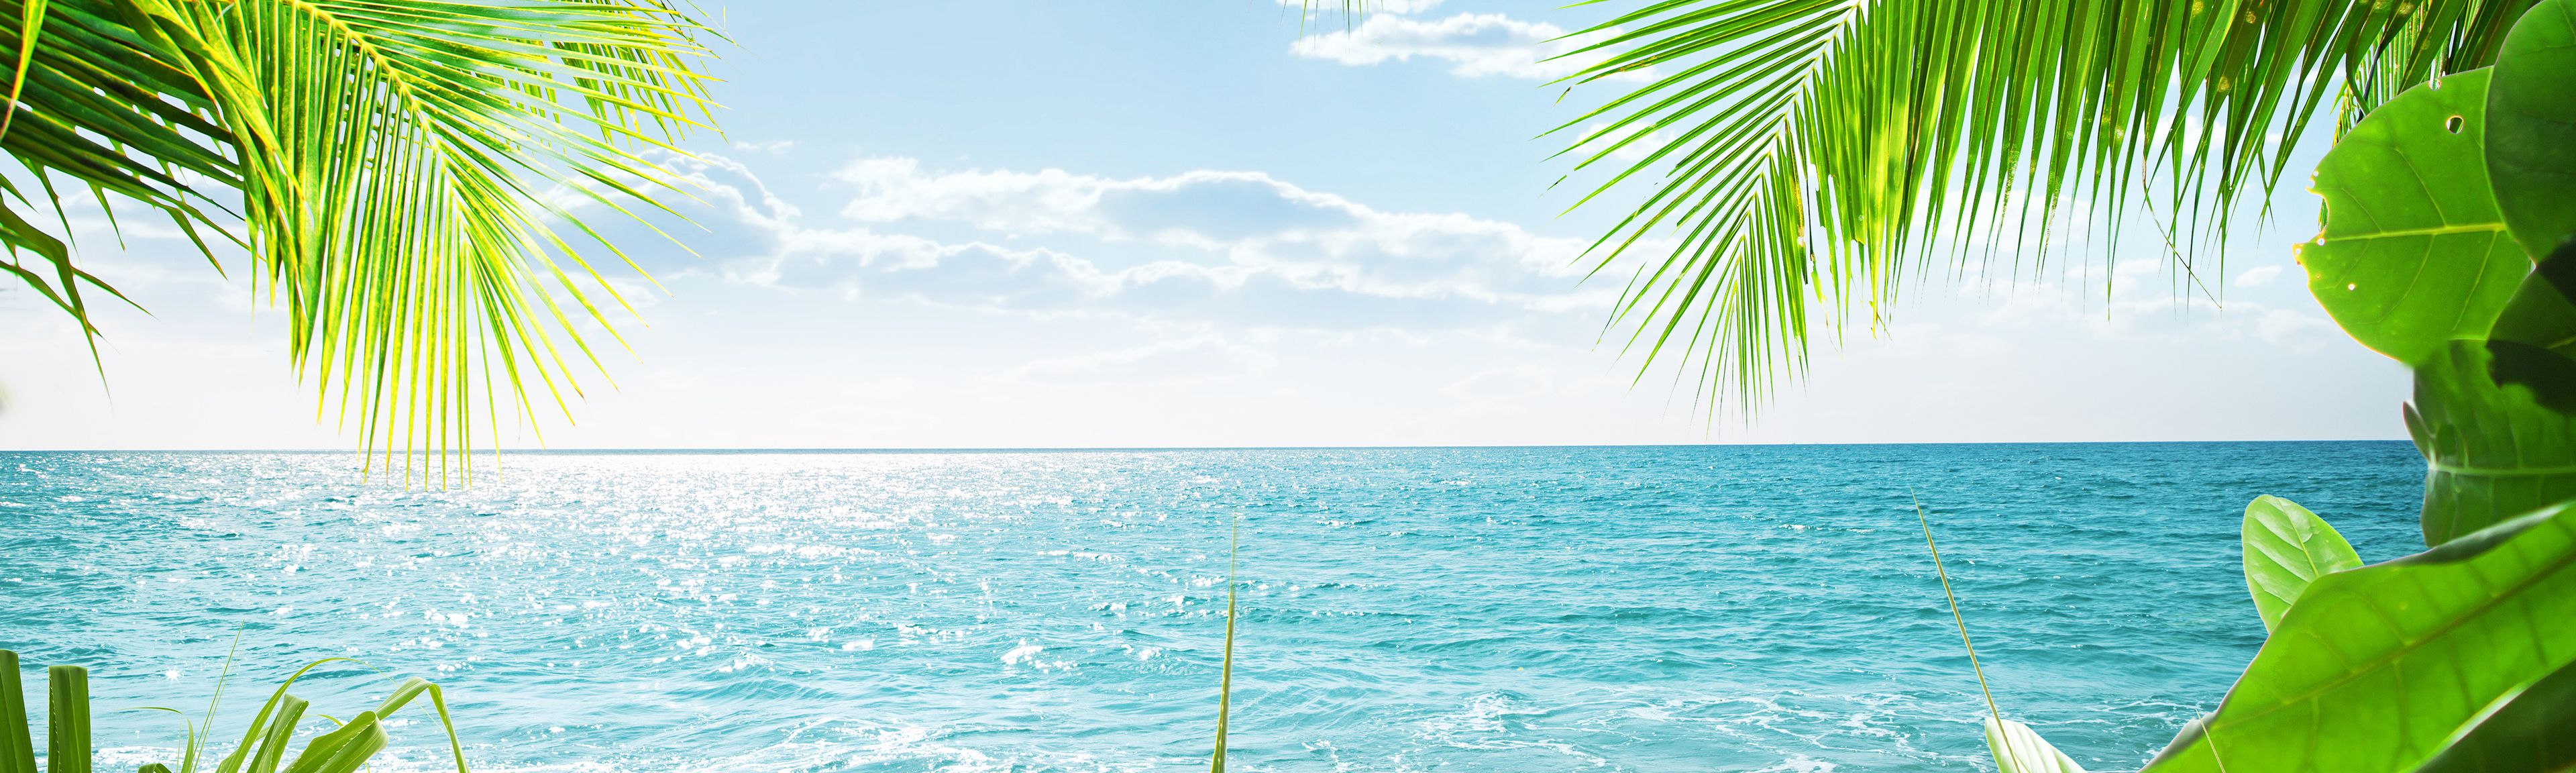 Paradiesischer Blick auf das Meer mit Palmen im Vordergrund